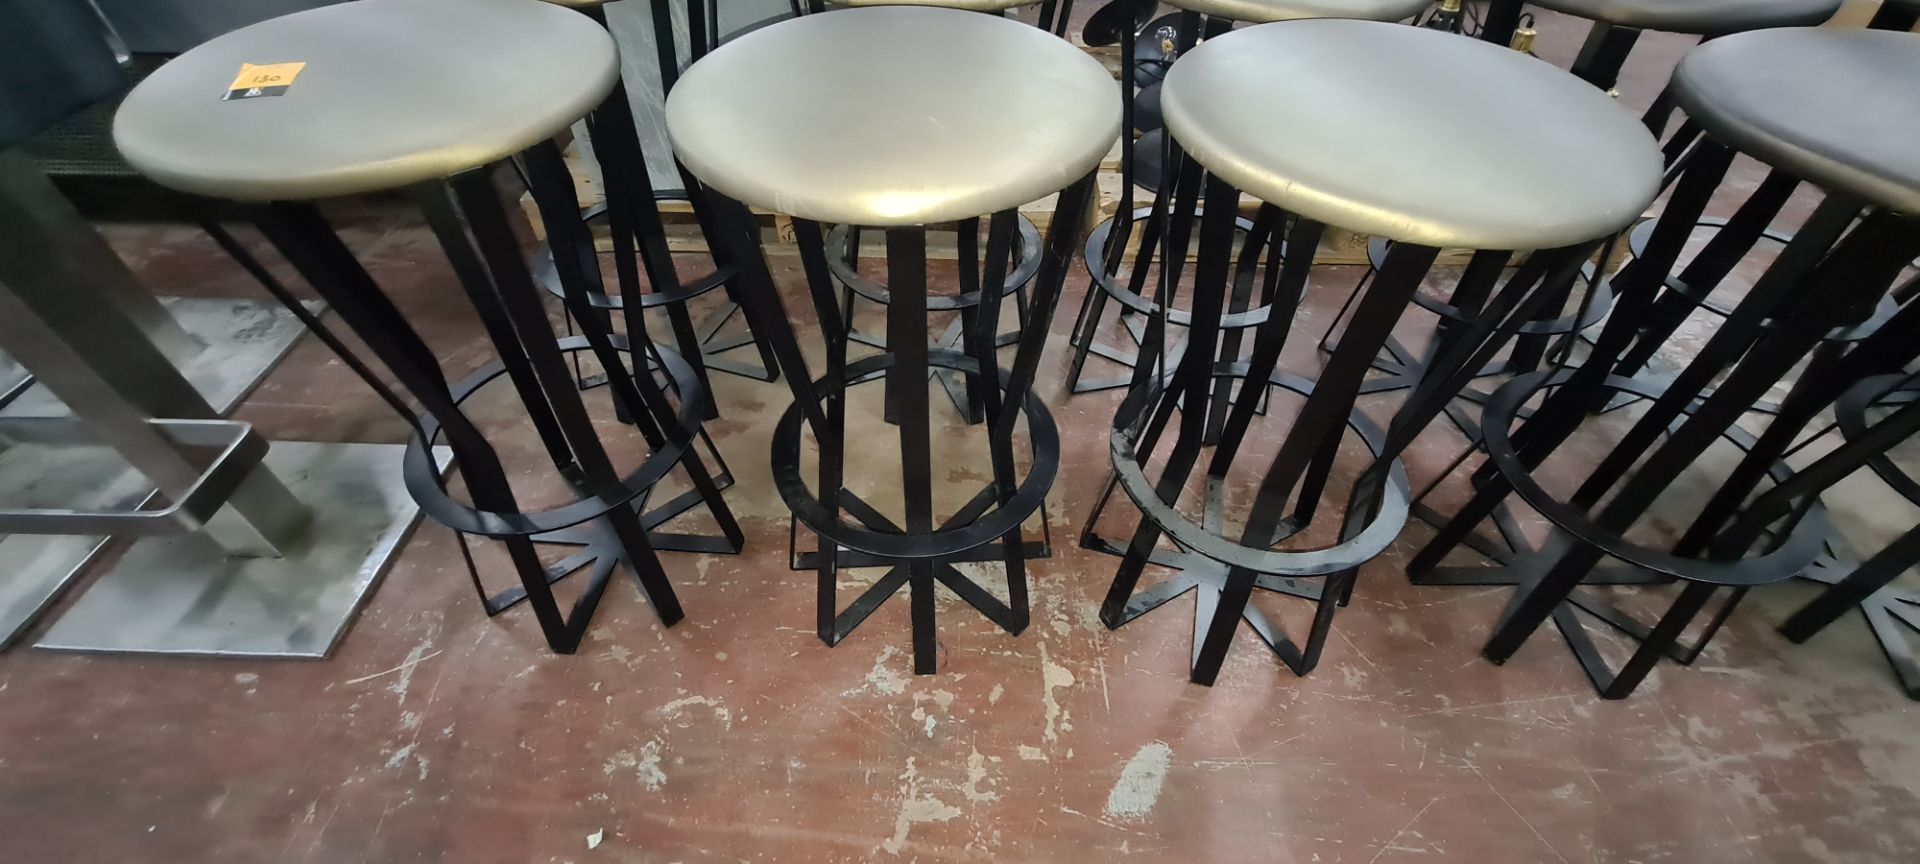 6 off black metal upholstered bar stools - Image 4 of 4